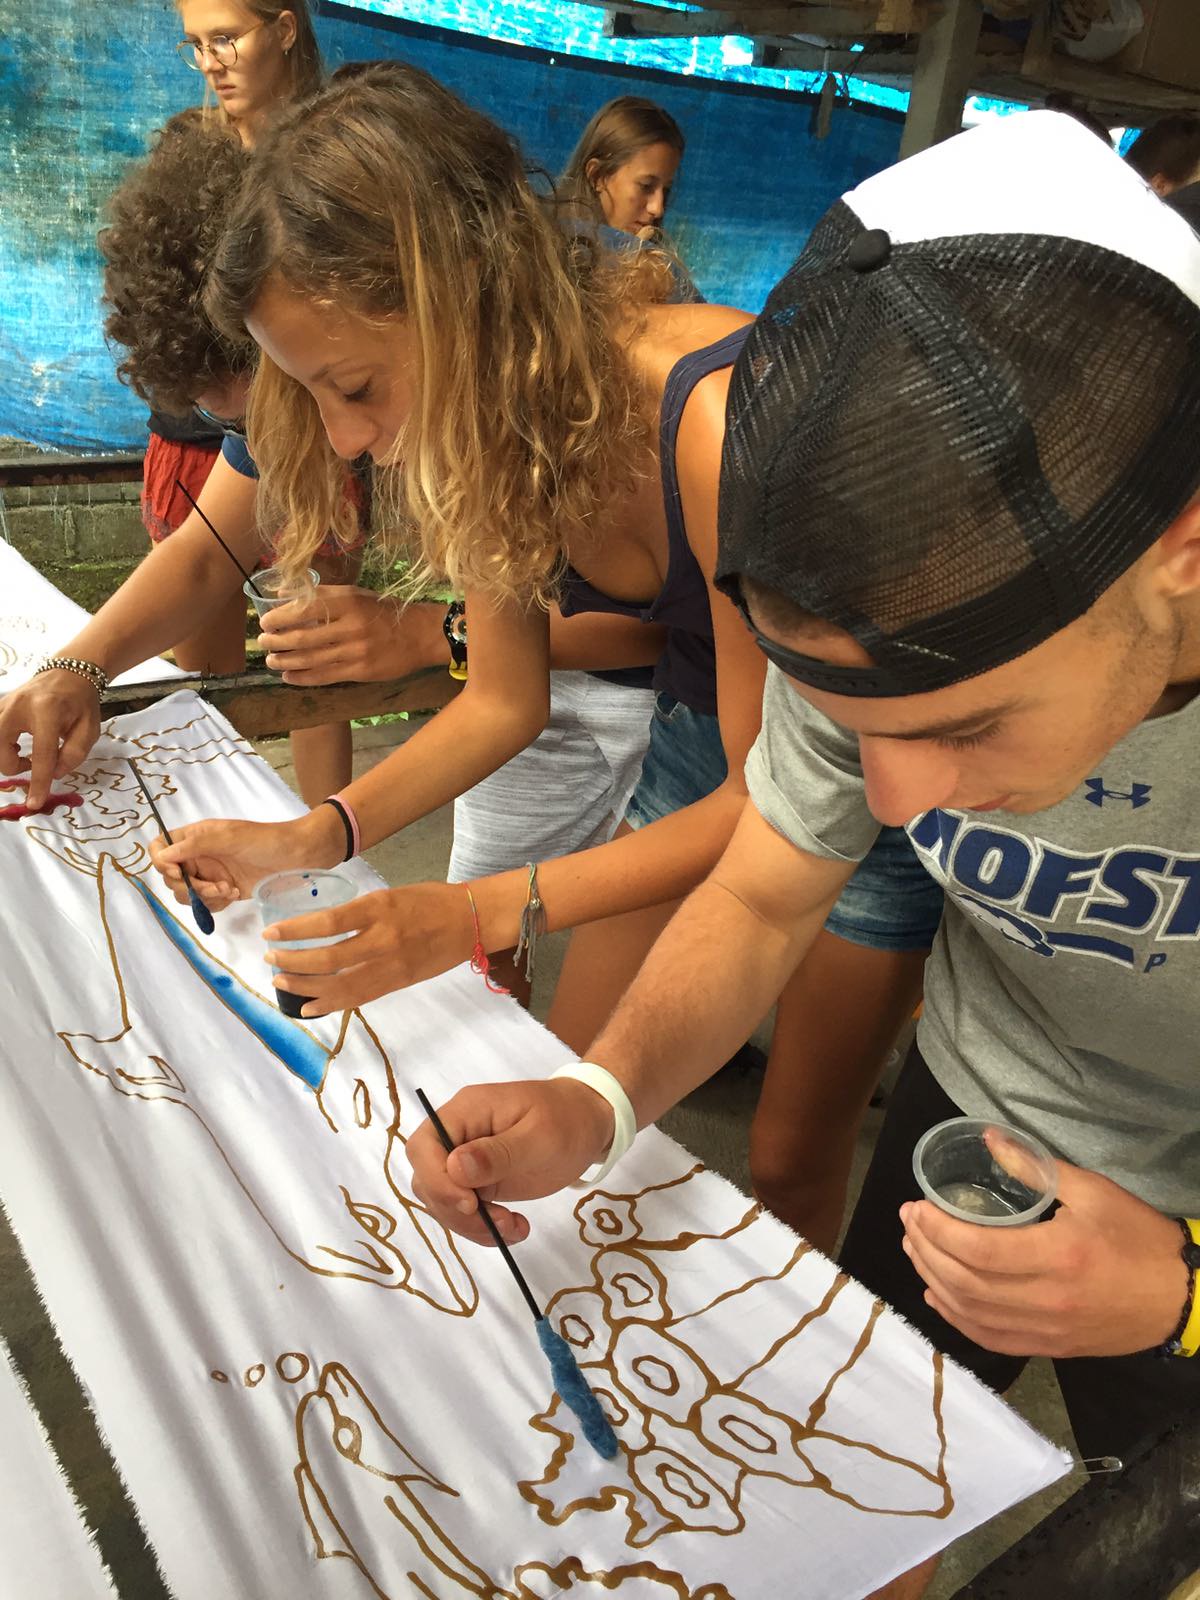 Tre giovani in abiti estivi sono chini su un lenzuolo bianco: stanno colorando con gli acquerelli le sagome di due delfini, alghe e coralli